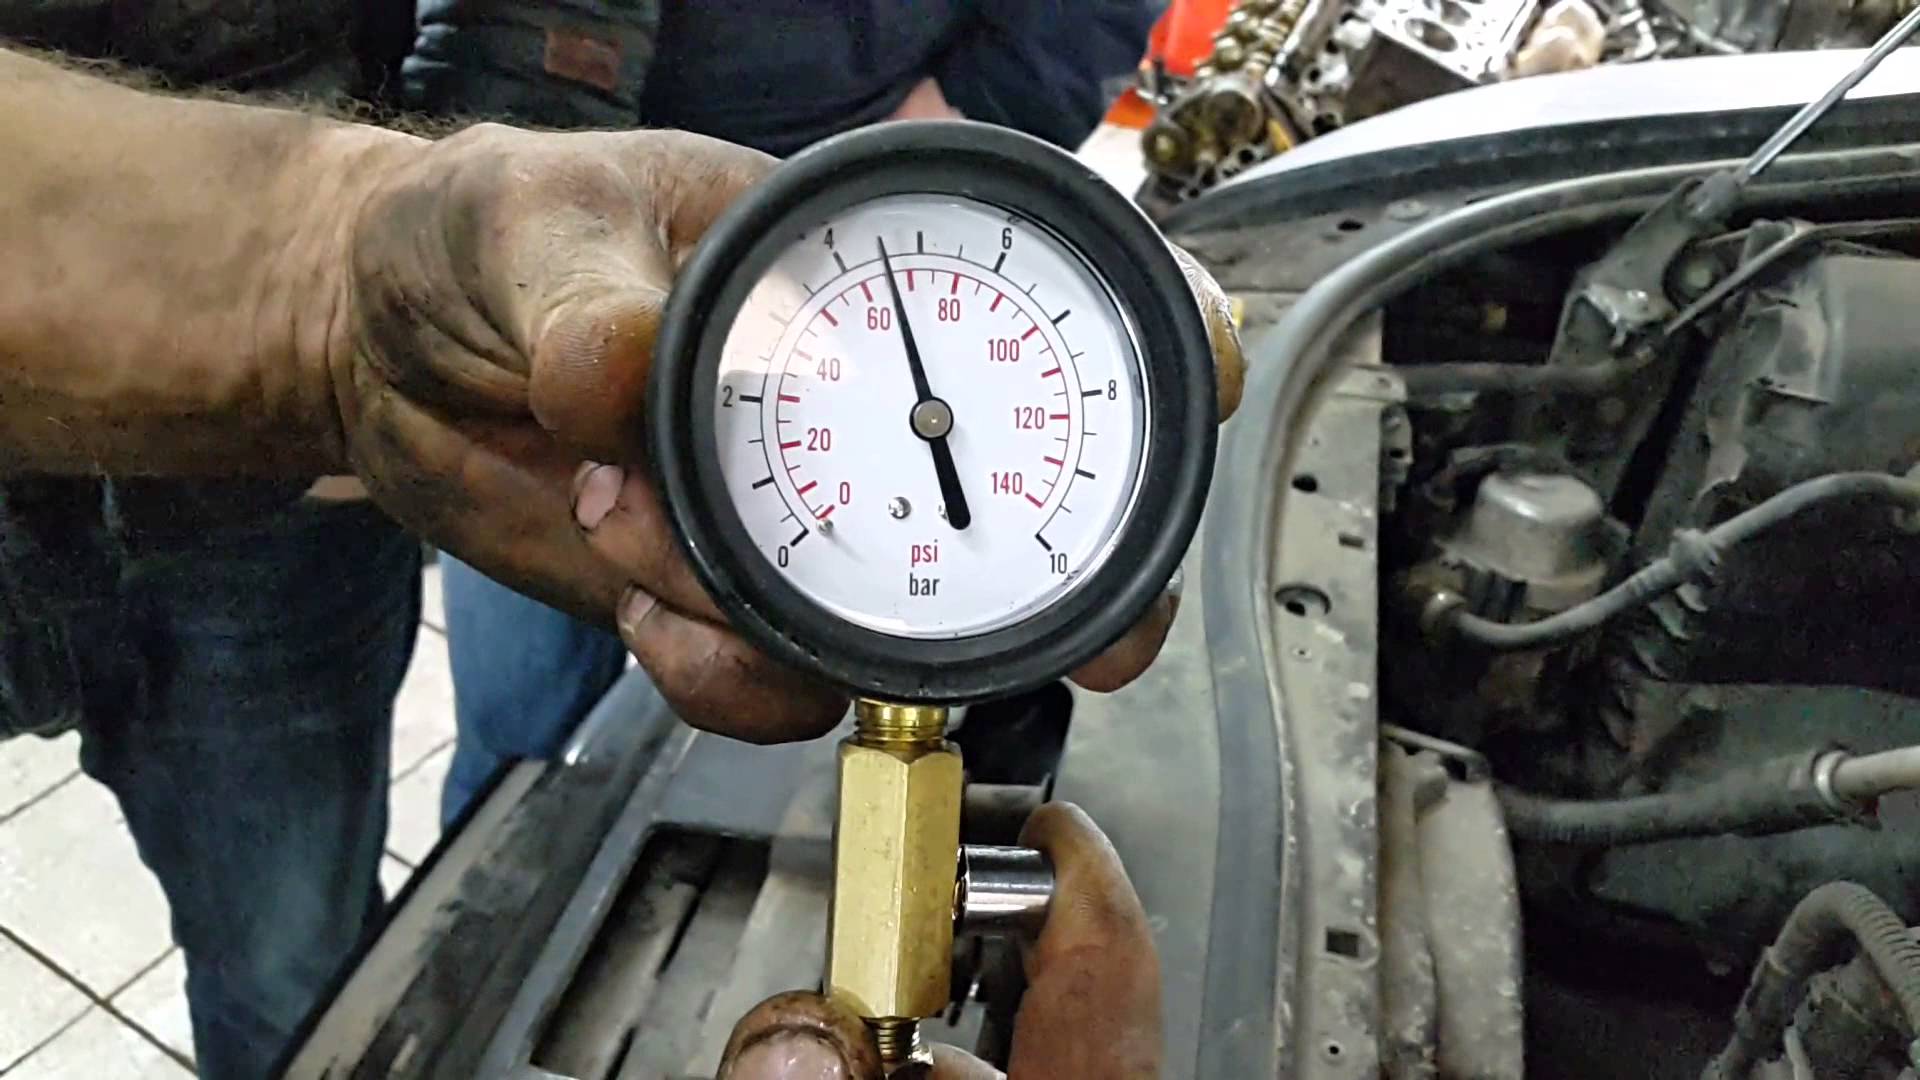 Нет давления масла в двигателе: причины падения давления и способы его повышения